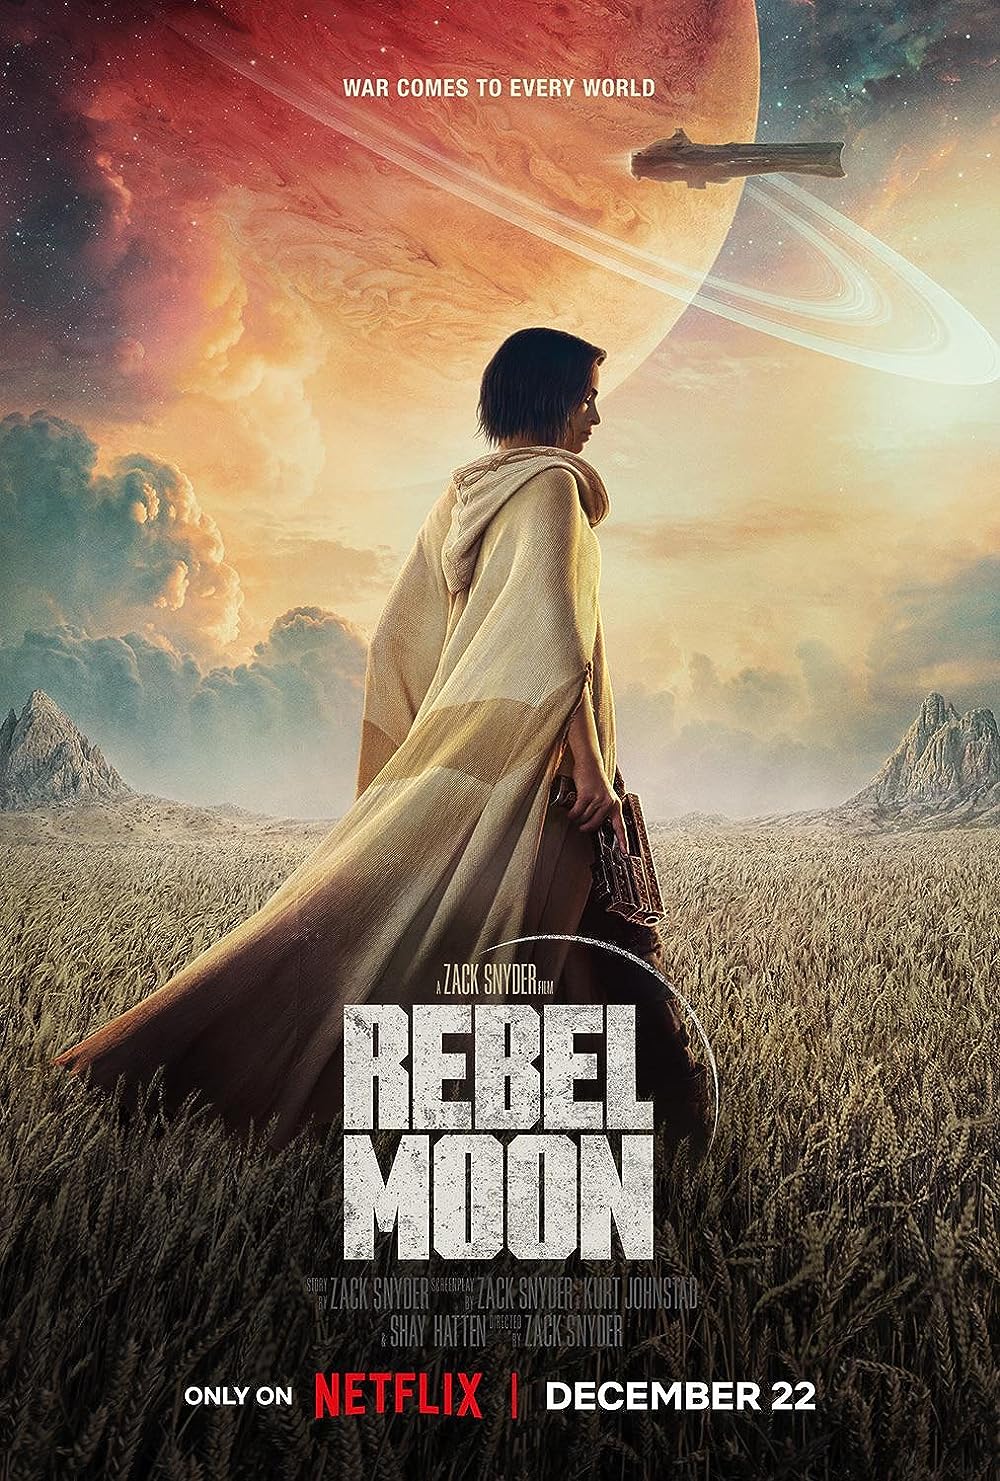 Imagem mostra o pôster do filme Rebel Moon